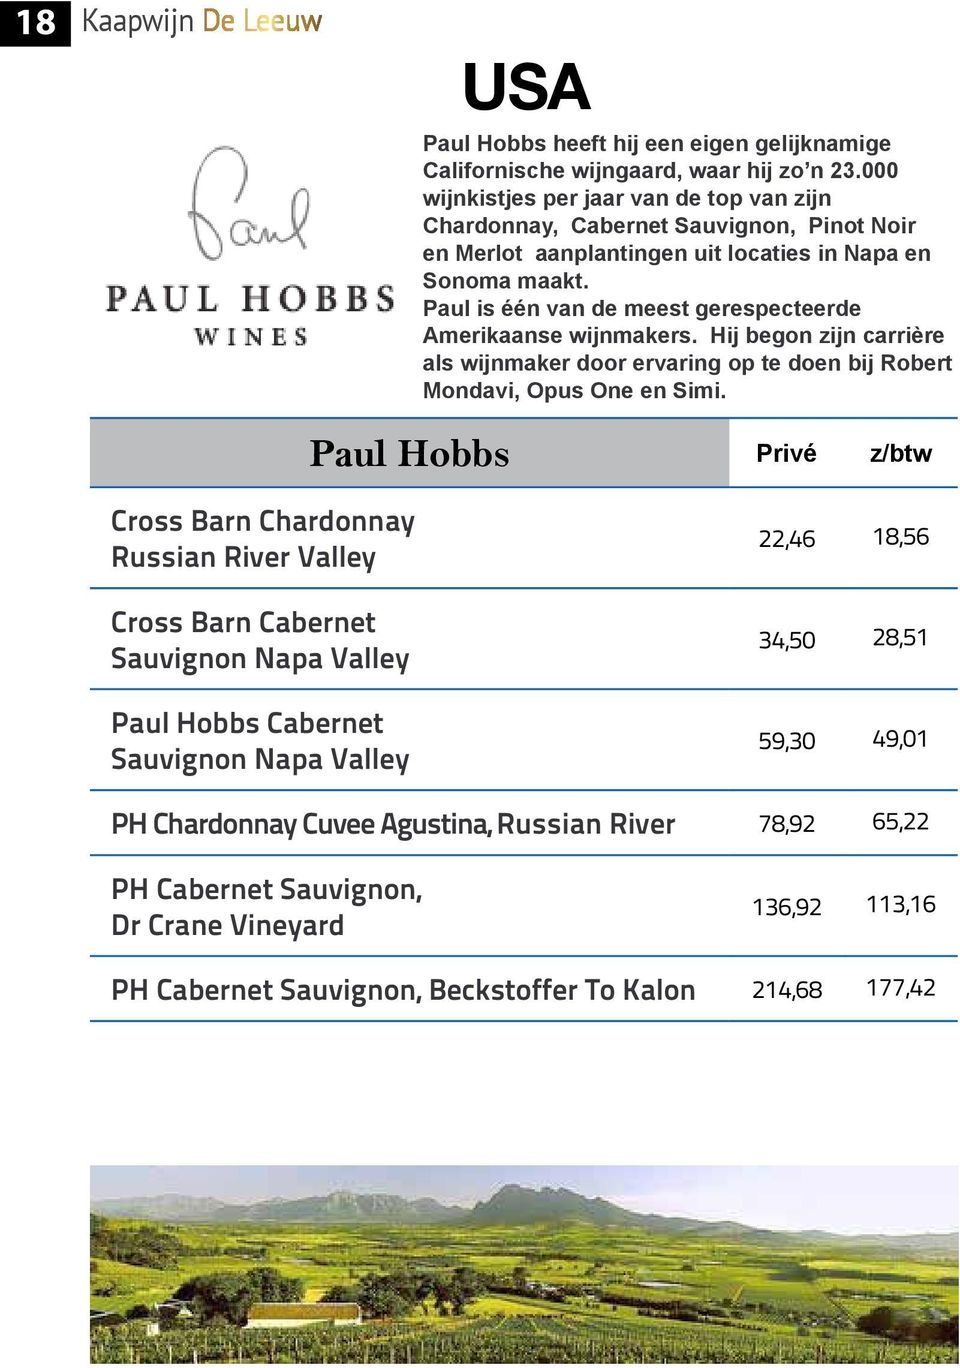 Paul is één van de meest gerespecteerde Amerikaanse wijnmakers. Hij begon zijn carrière als wijnmaker door ervaring op te doen bij Robert Mondavi, Opus One en Simi.